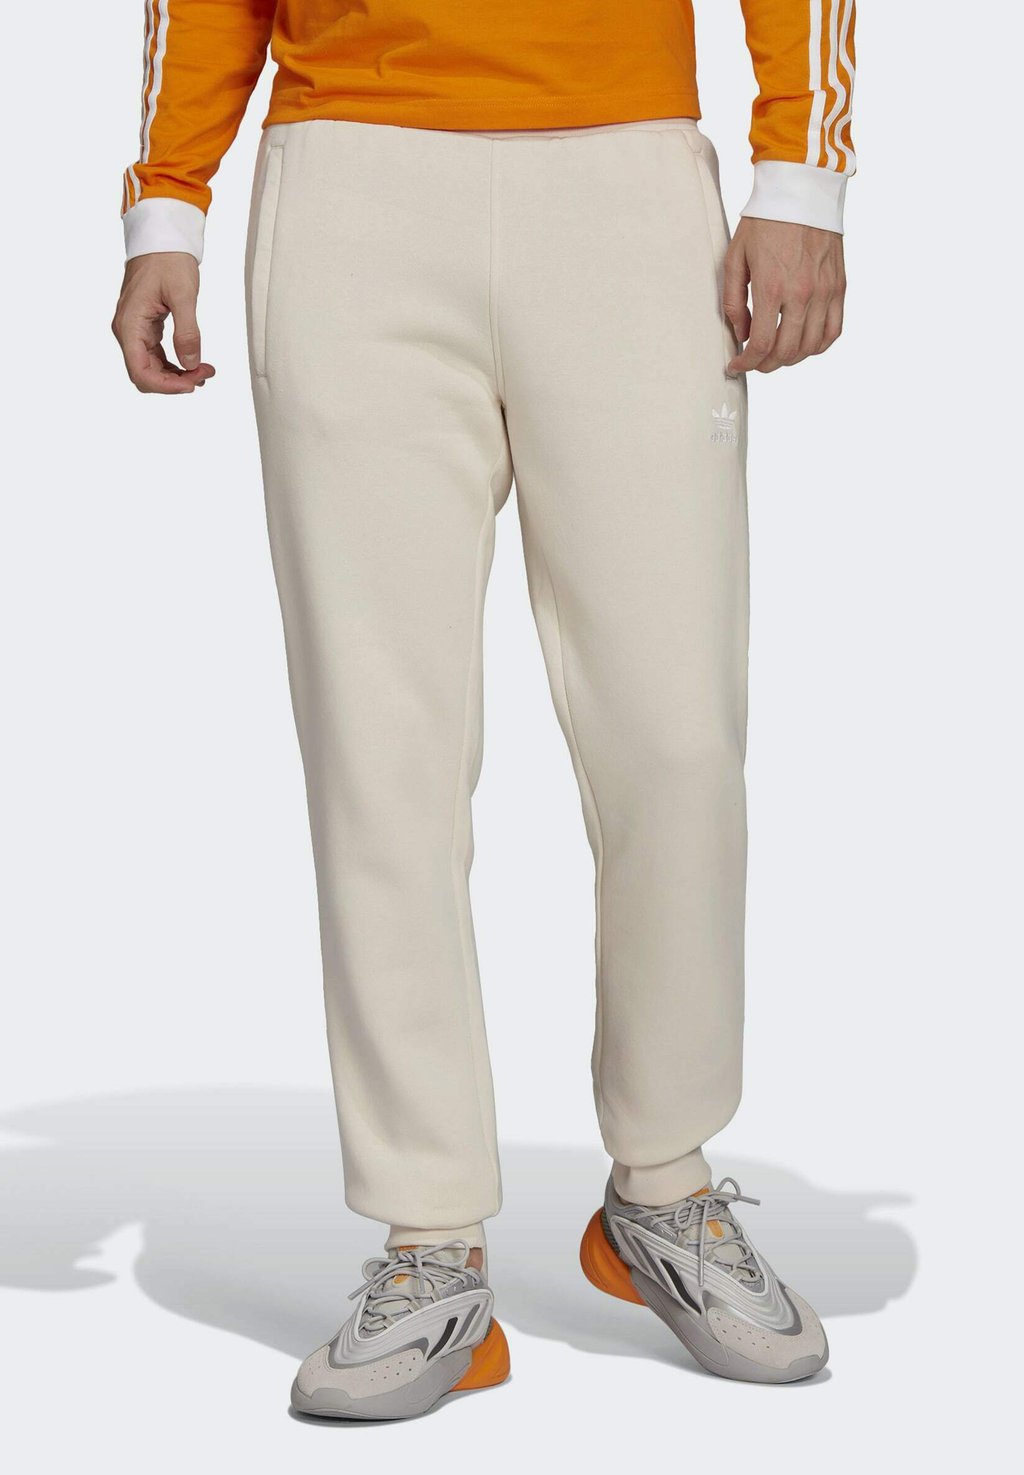 Спортивные брюки Adicolor Essentials Trefoil adidas Originals, белый брюки спортивные adidas originals adicolor trefoil 3d non dyed xl